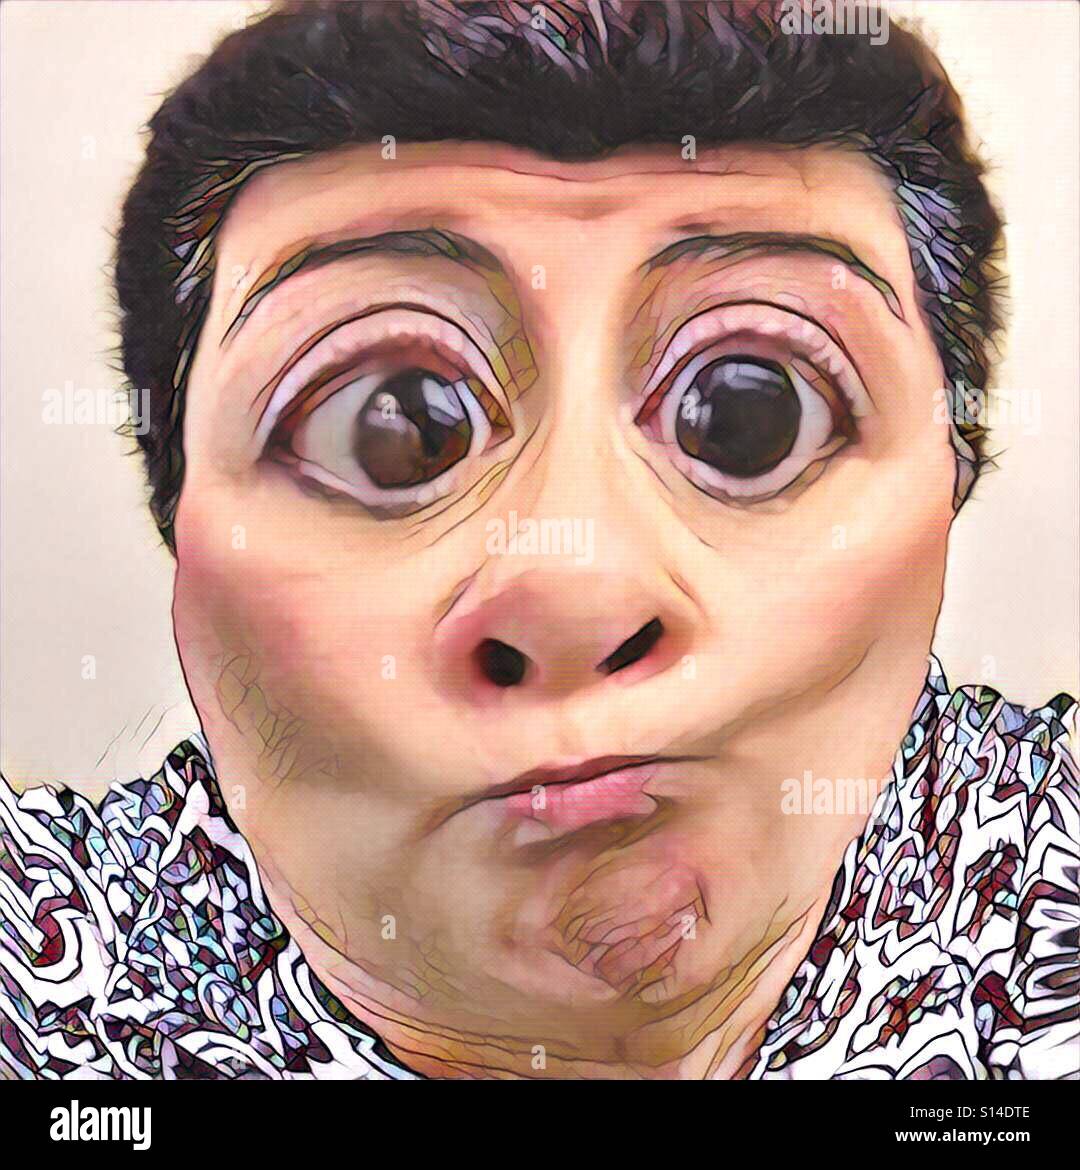 Eine komische digitale Porträt eine dunkelhaarige kaukasischen Frau mit Übergröße große Augen machen ein lustiges Gesicht. Stockfoto